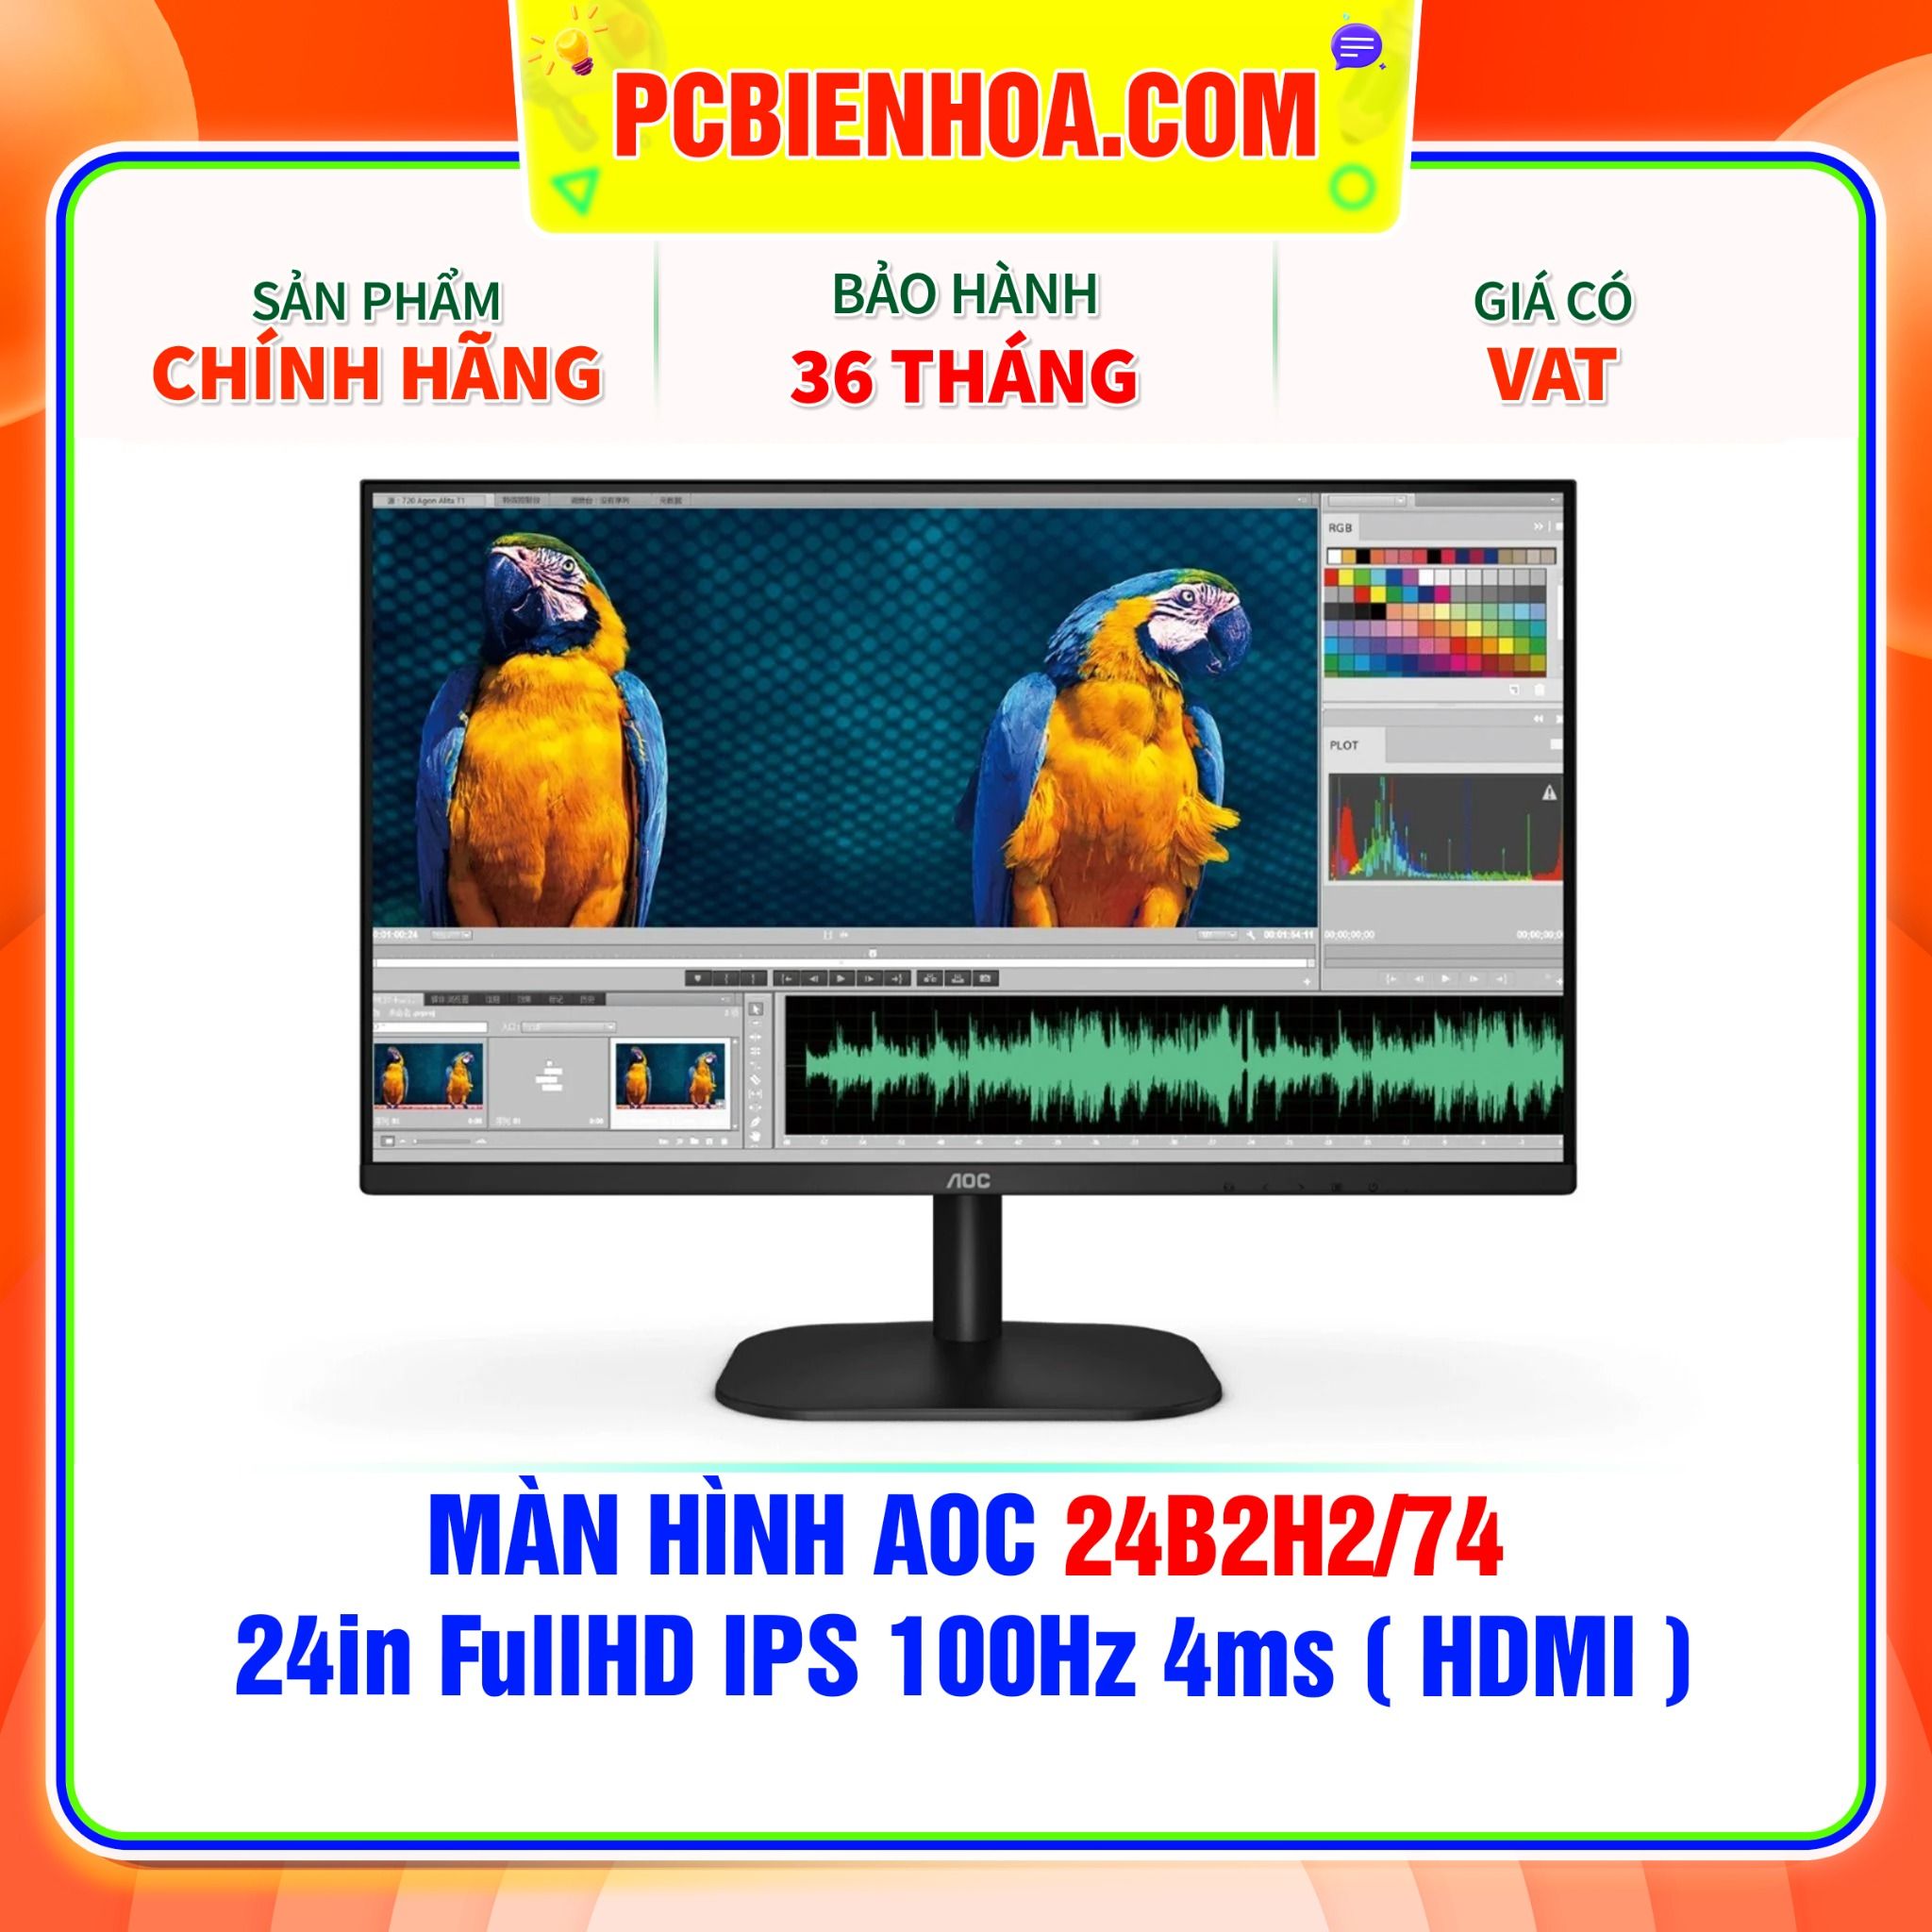  MÀN HÌNH AOC 24B2H2/74 - 24in FullHD IPS 100Hz 4ms ( HDMI ) 